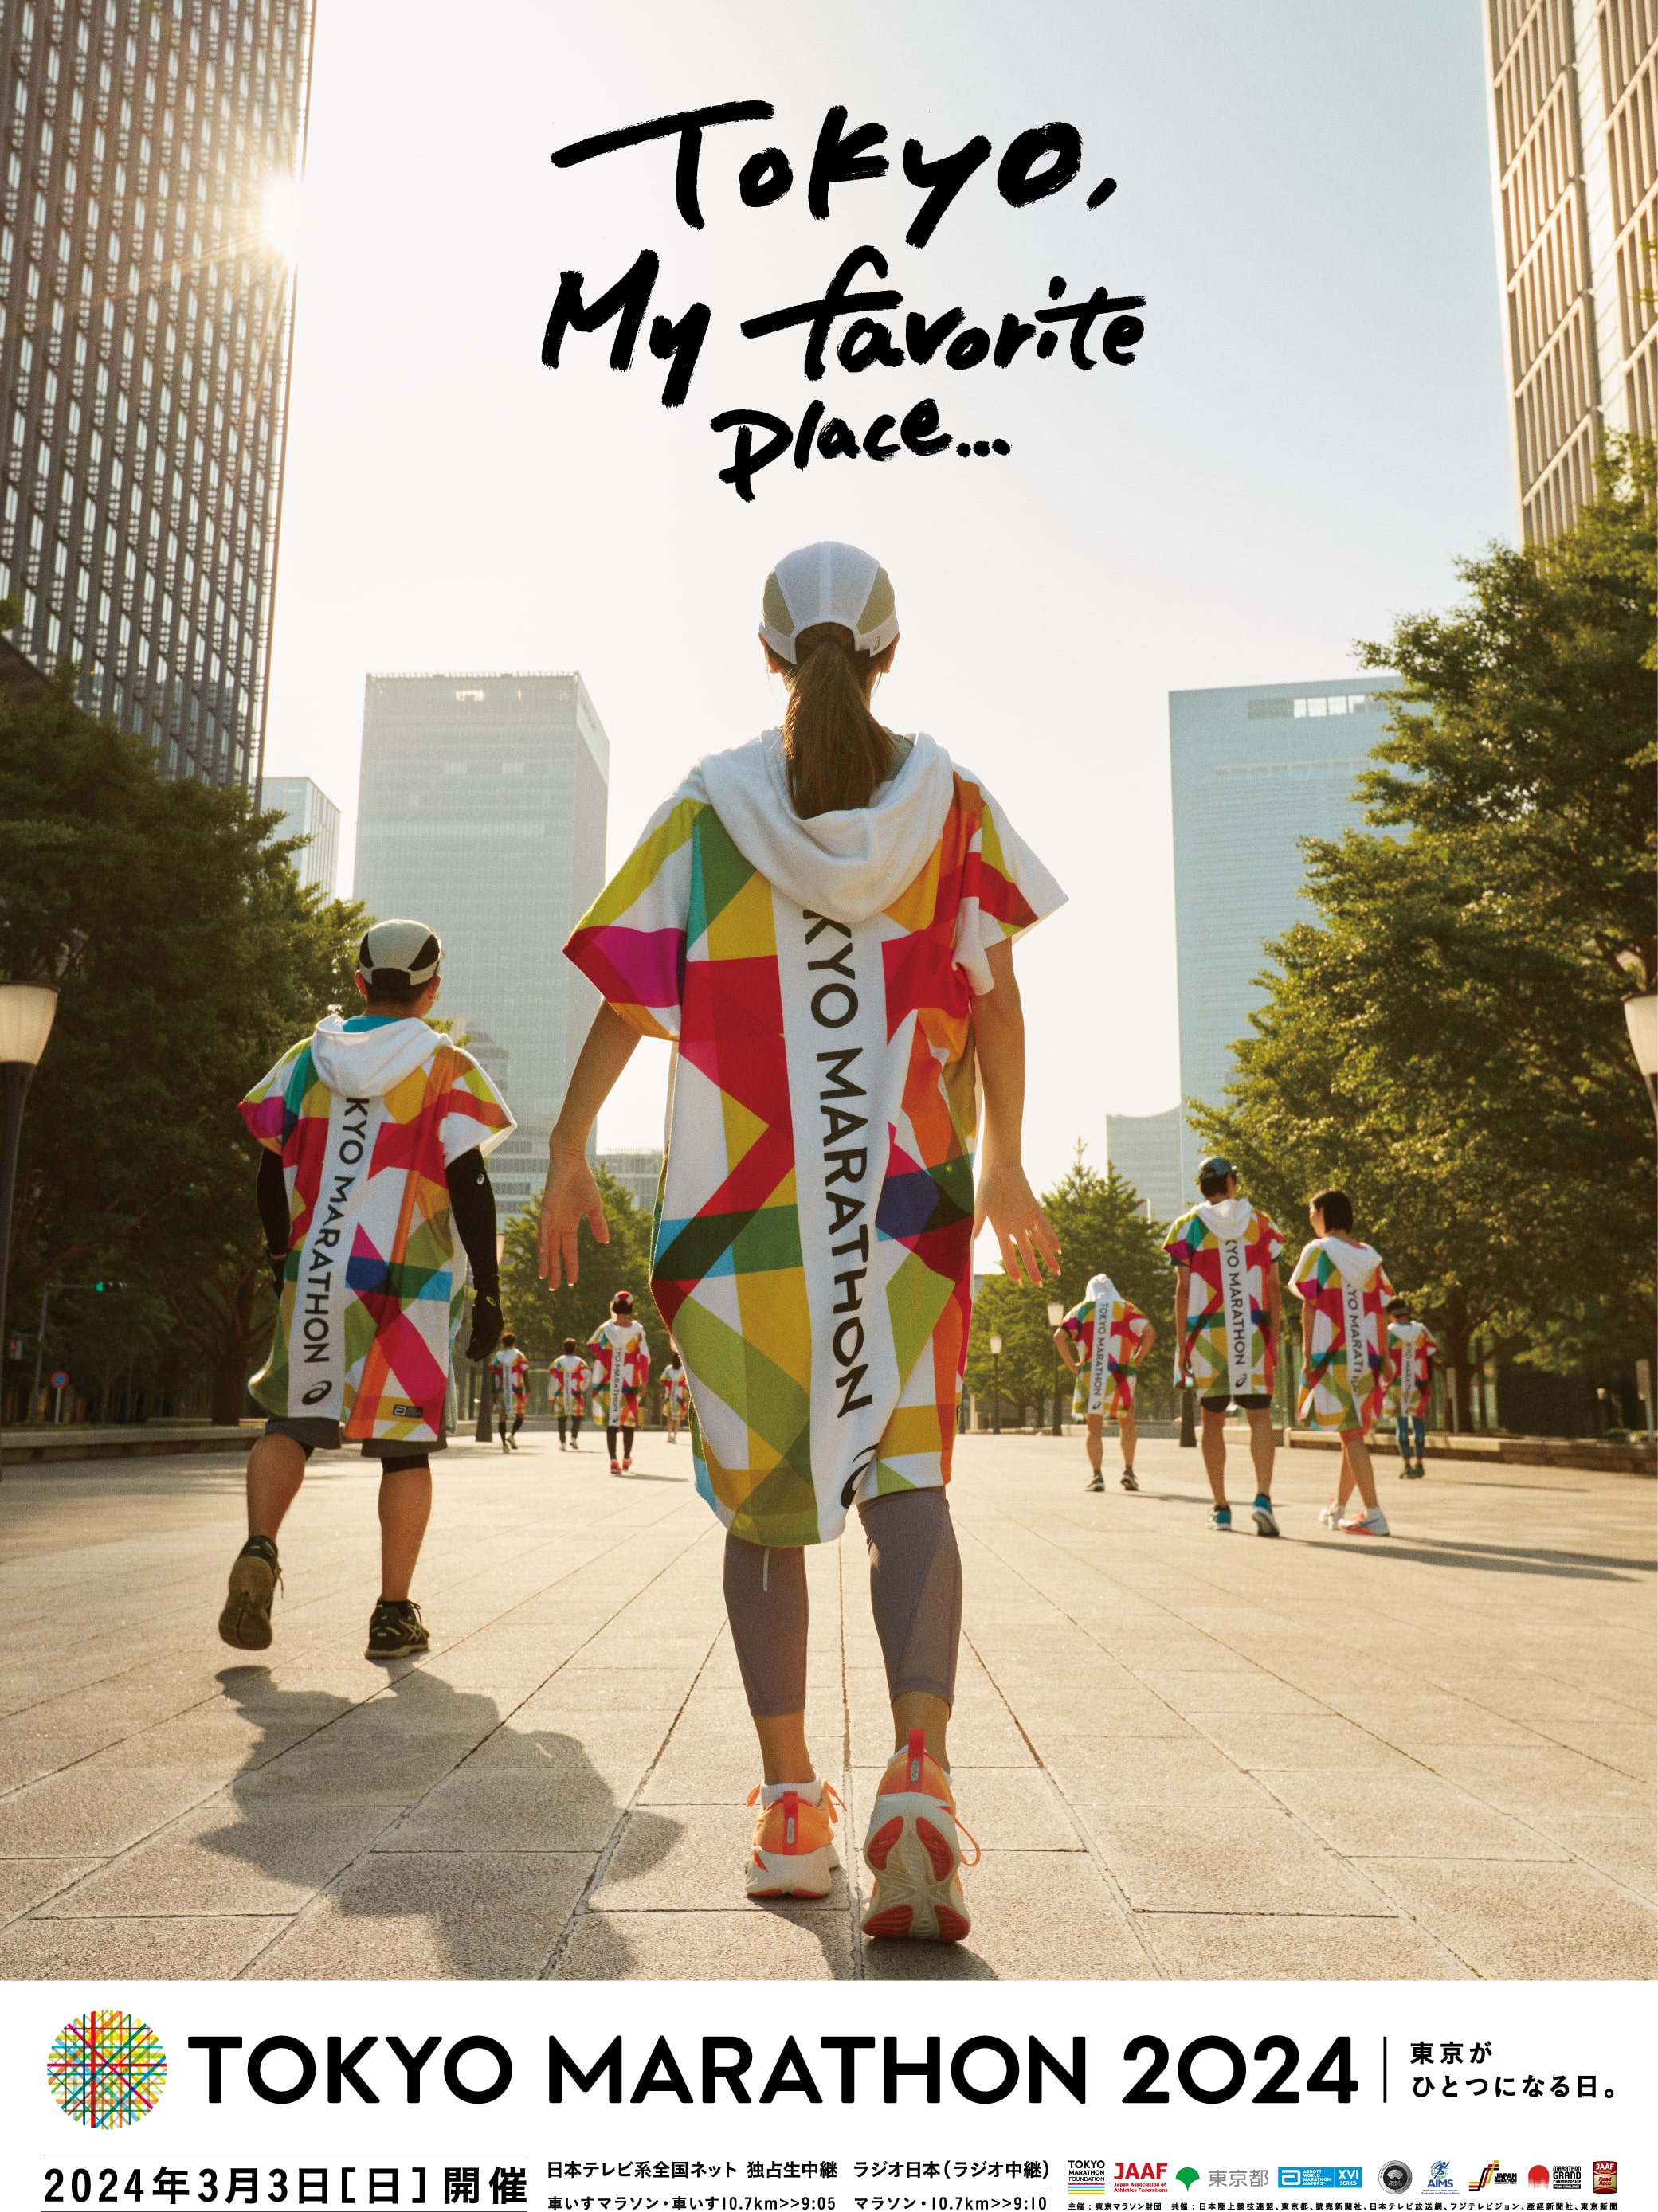 Tokyo Marathon 2024 poster